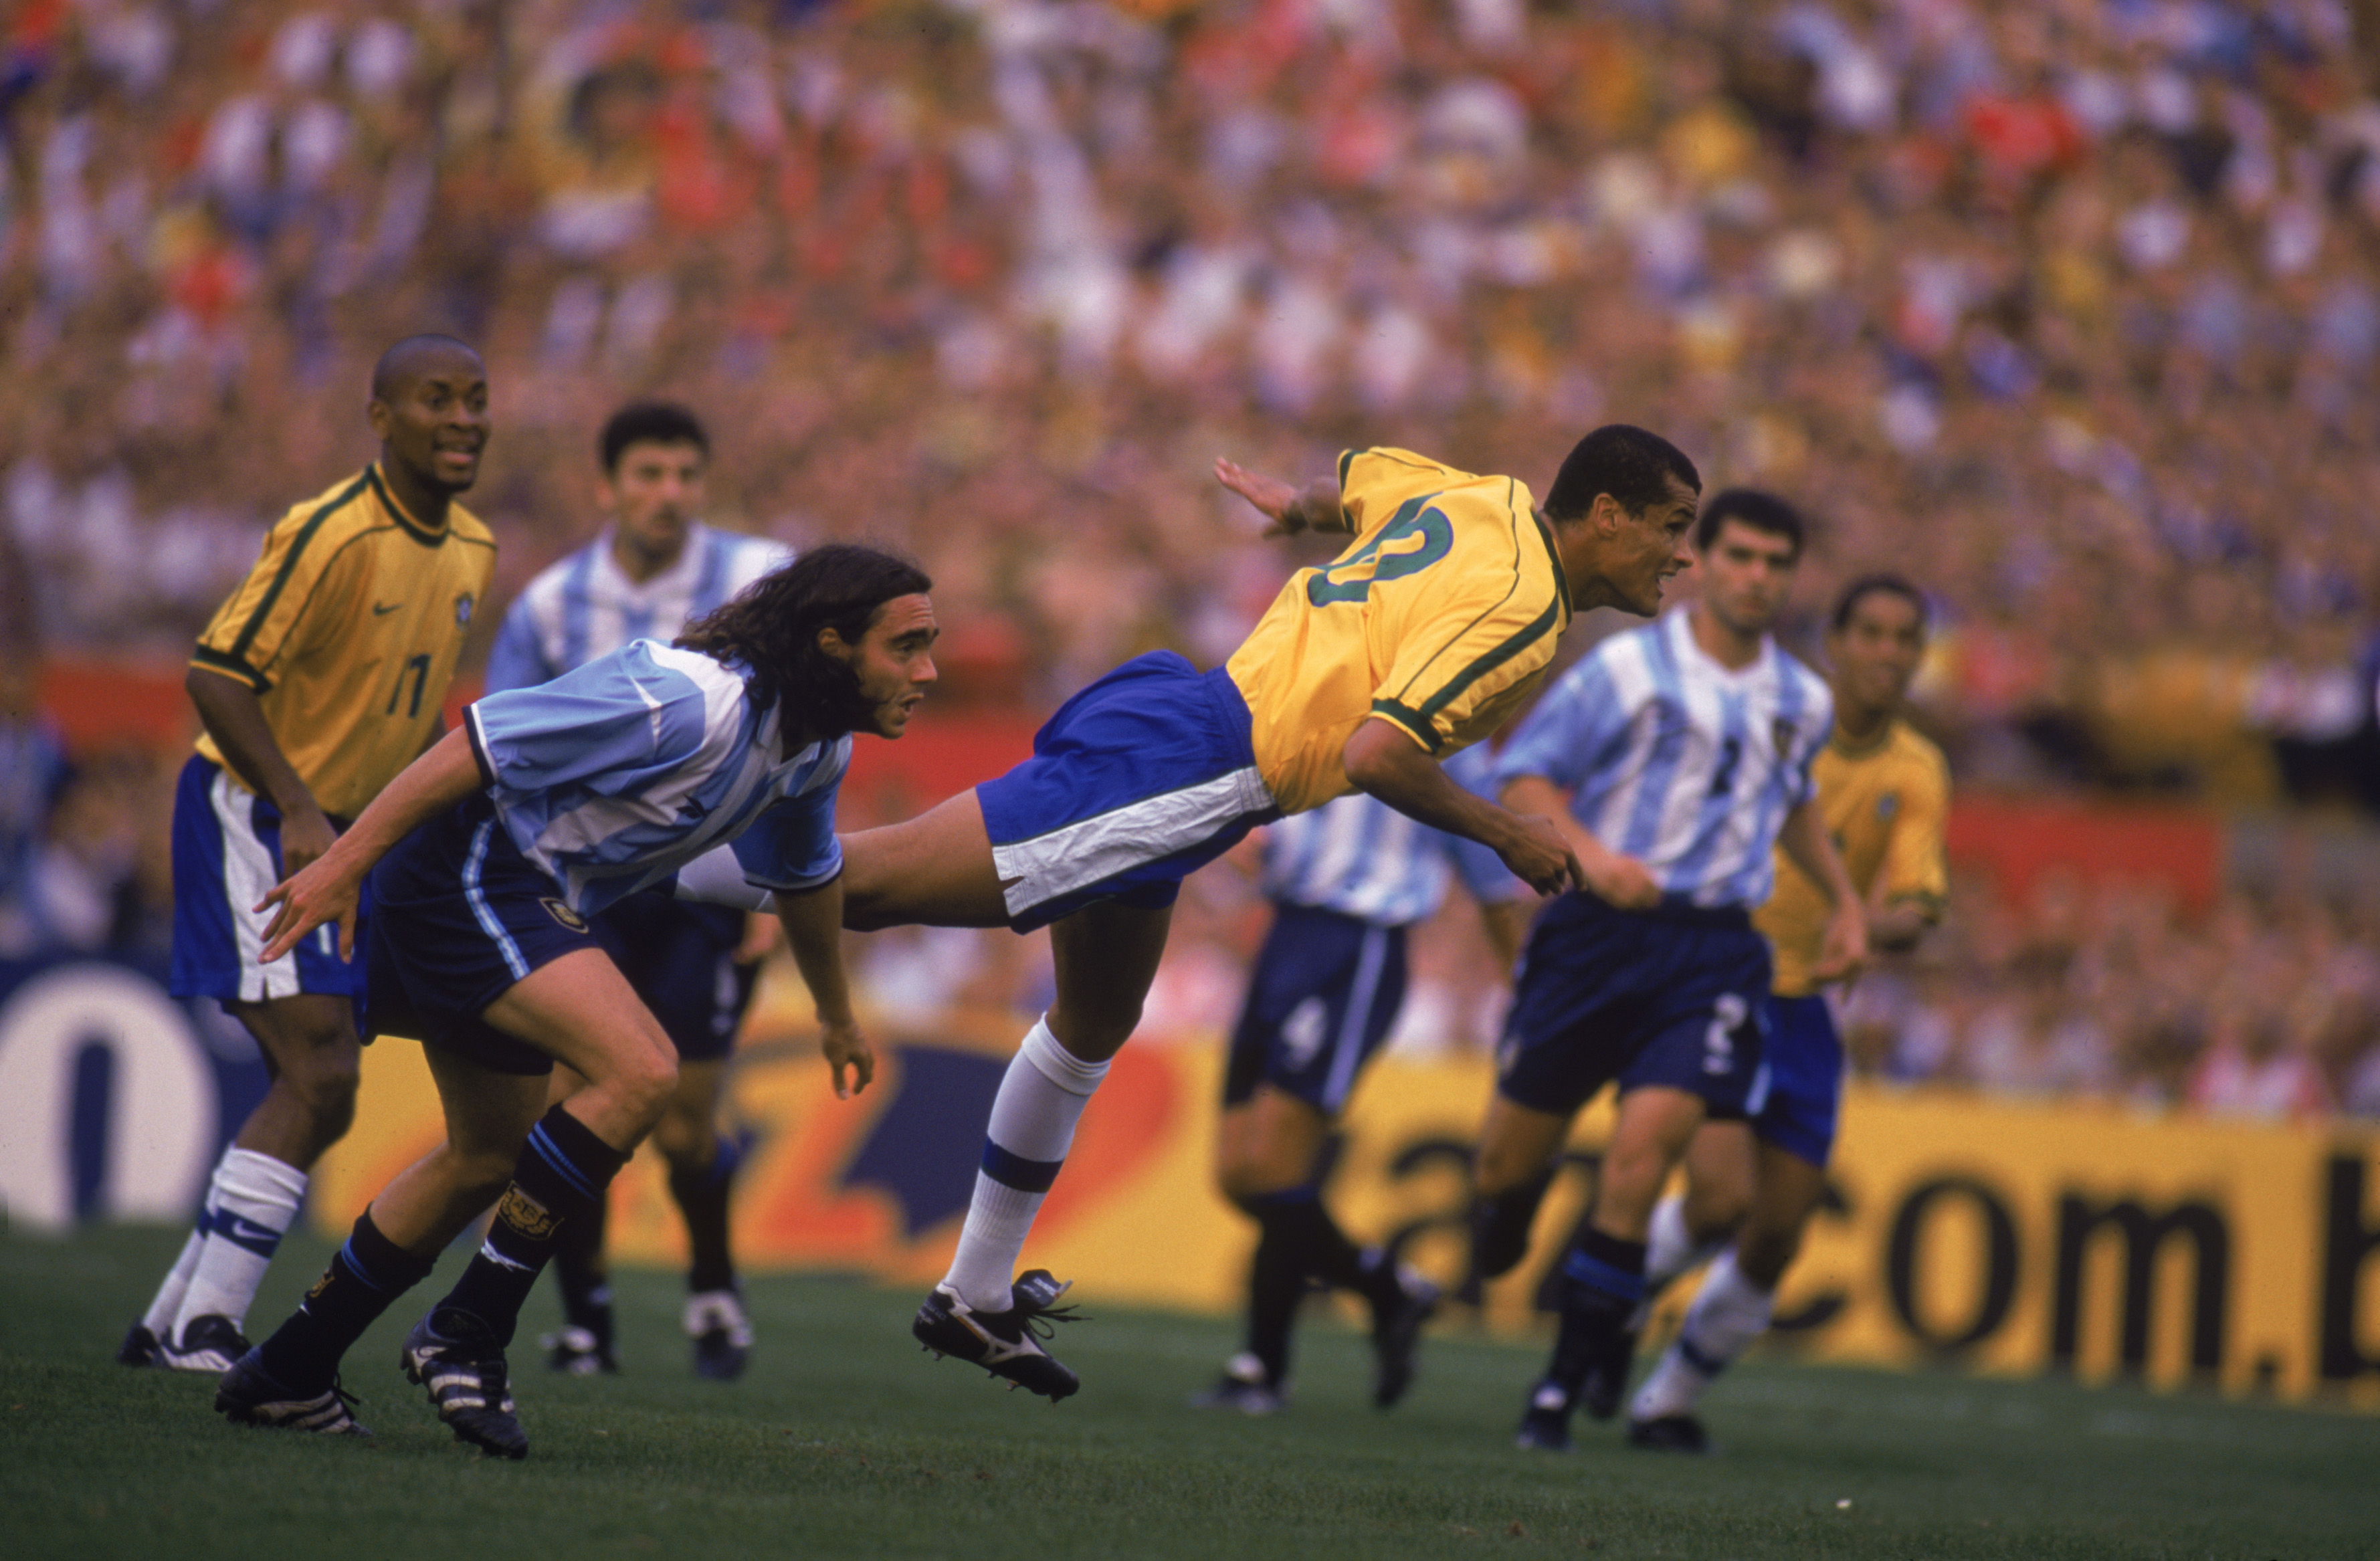 Brasil x Argentina: o clássico sul-americano em imagens históricas | VEJA